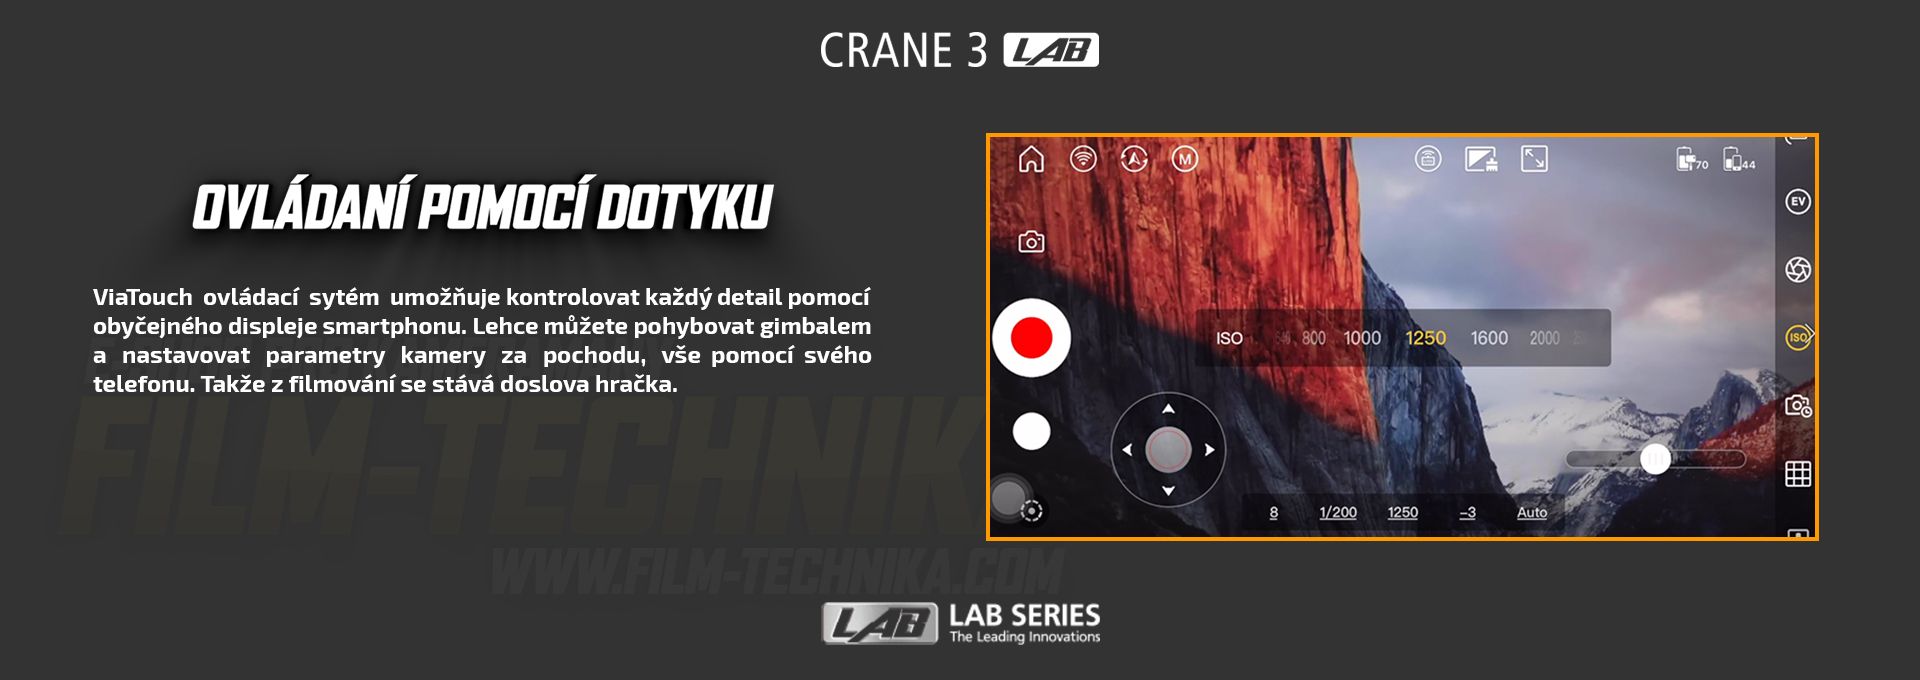 film-technika-zhiyun-crane3-lab-intext9